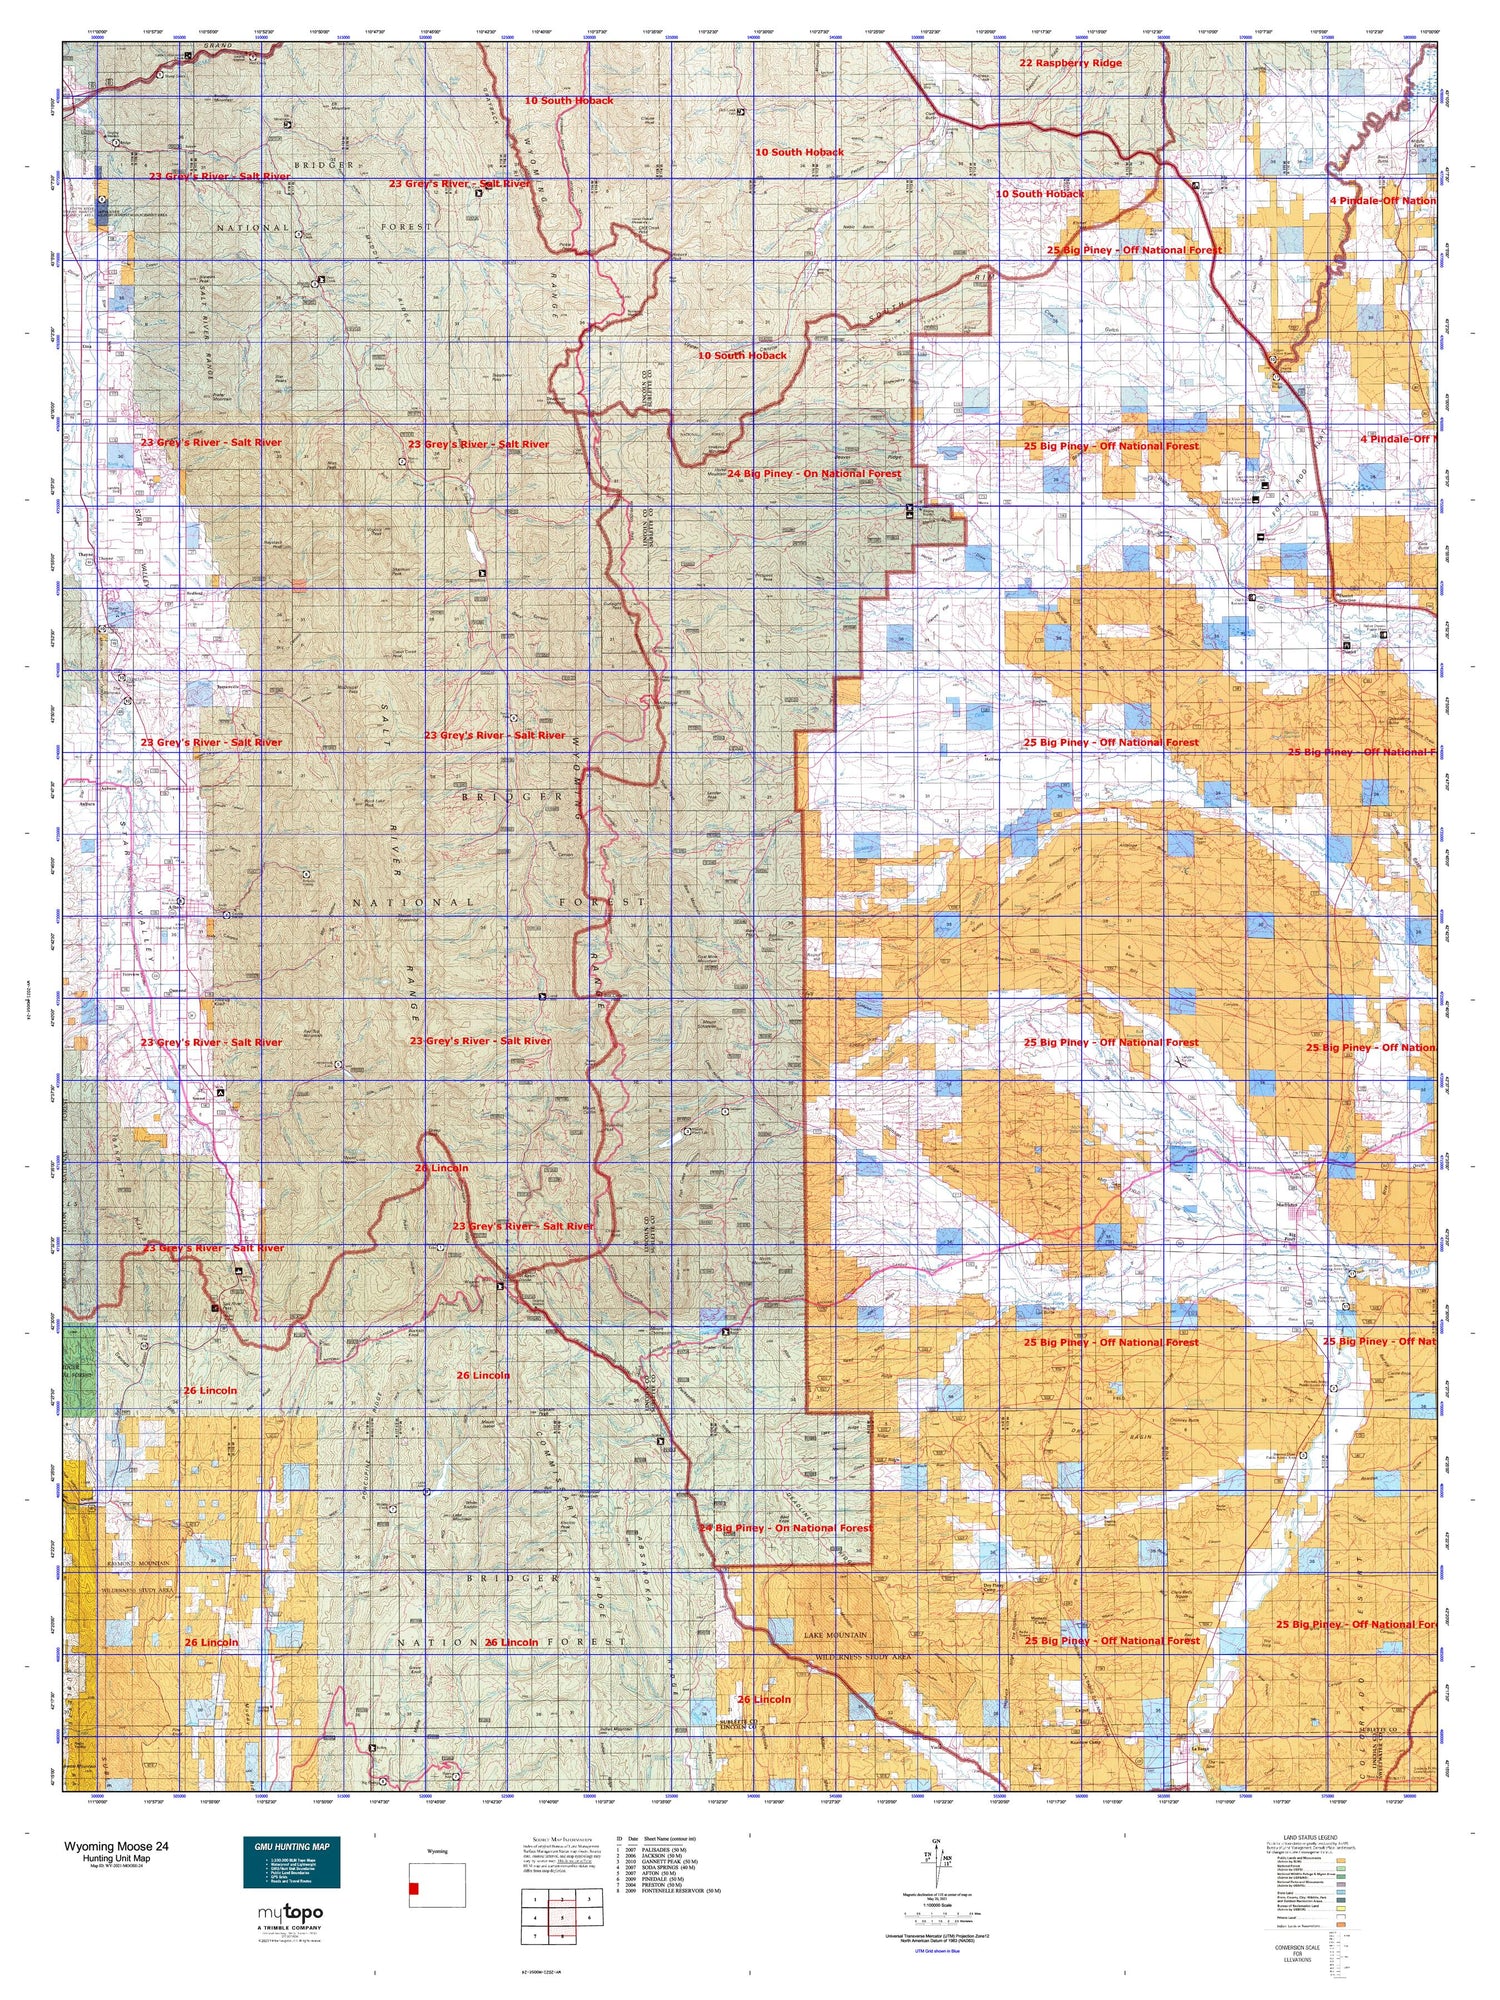 Wyoming Moose 24 Map Image